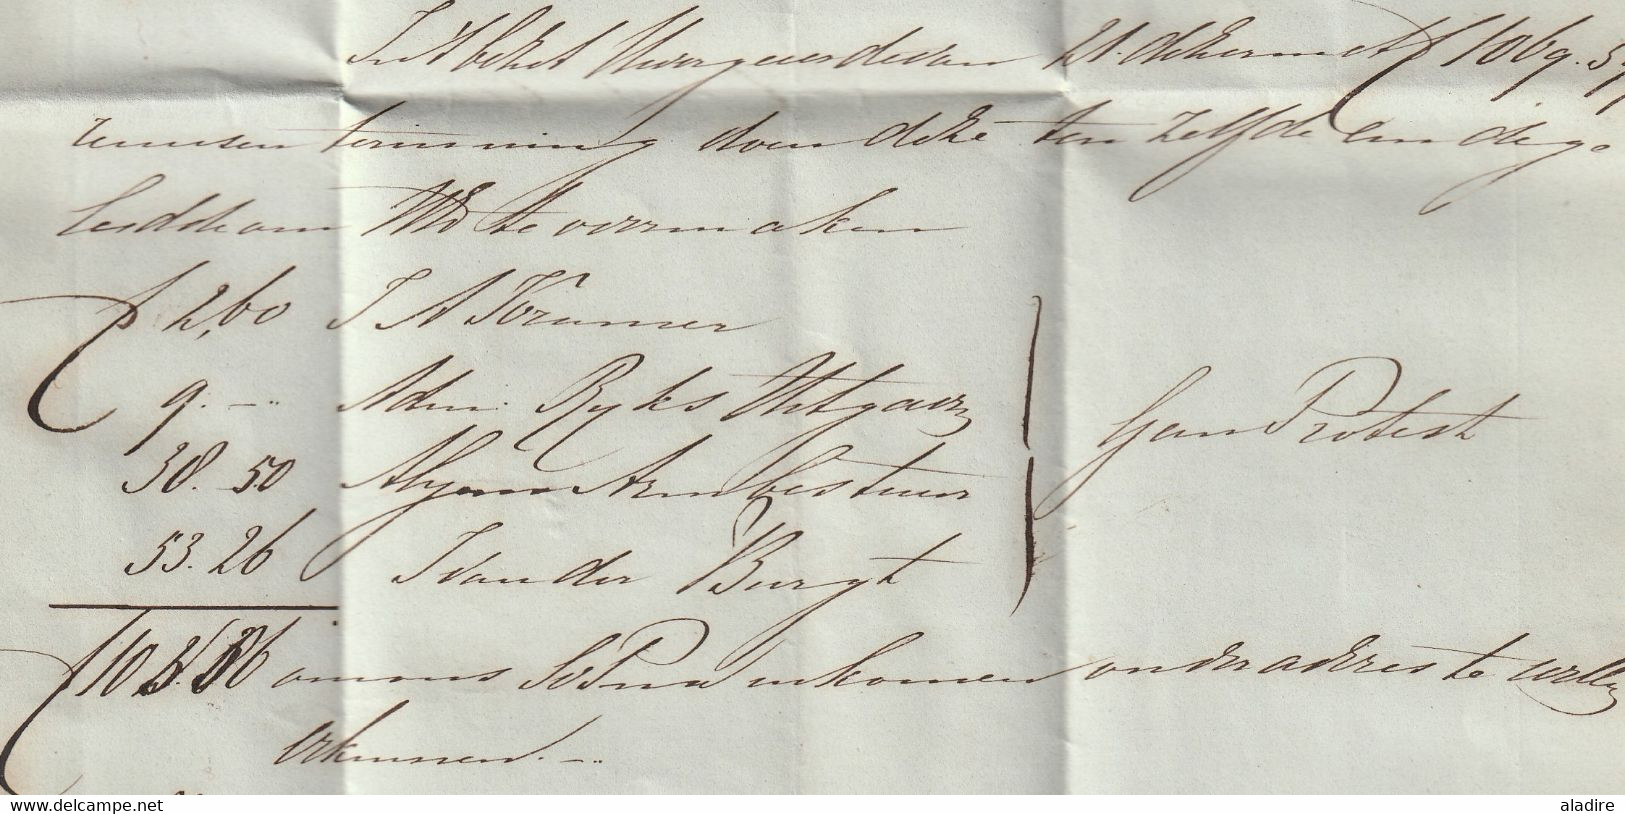 1843 - Lettre pliée avec correspondance de ARNHEM, Pays Bas Nederland vers HAGE, Basse Saxe, Deutschland - taxe 40 !!!